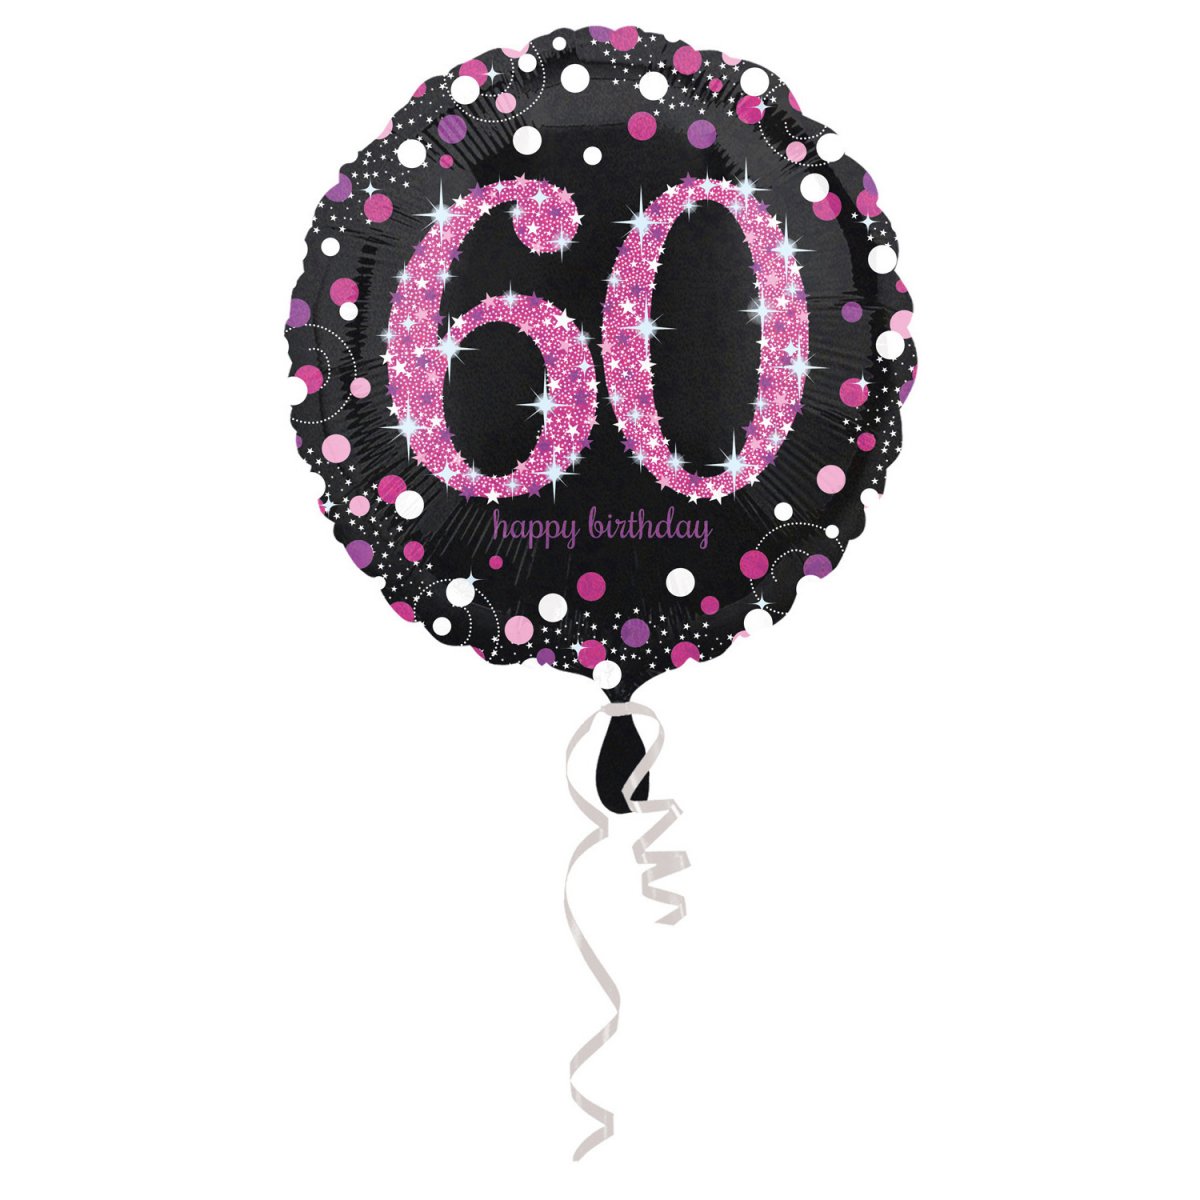 labyrint forum Sidelæns 60 års folie ballon pink | pynt til 60 års fødselsdag